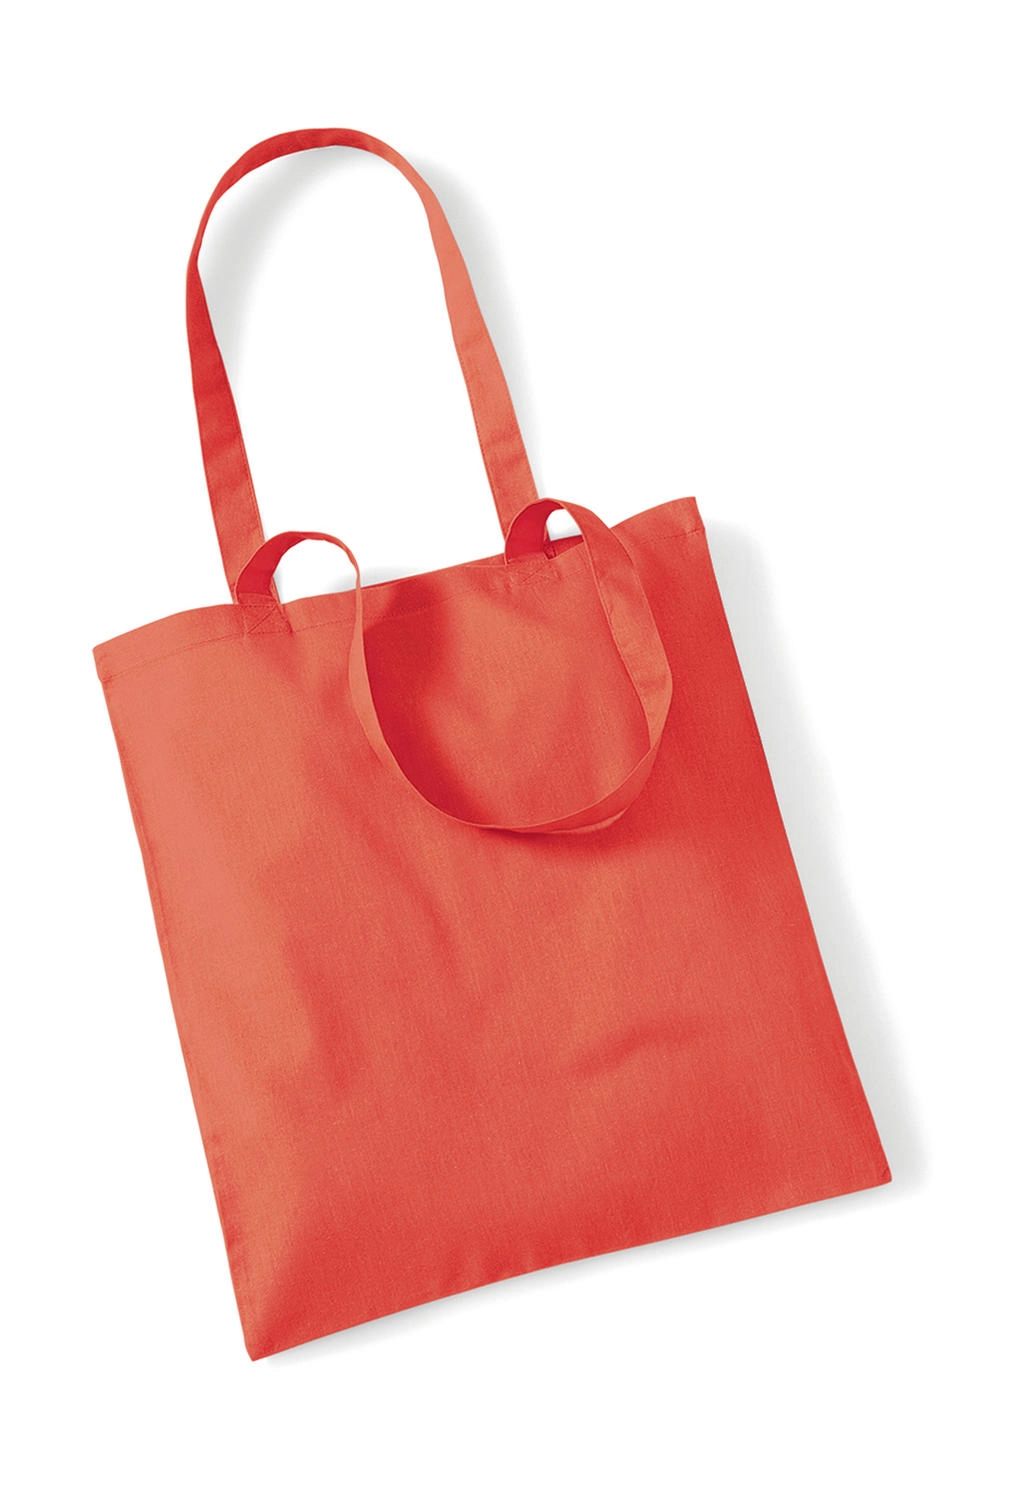 Bag for Life - Long Handles zum Besticken und Bedrucken in der Farbe Coral mit Ihren Logo, Schriftzug oder Motiv.